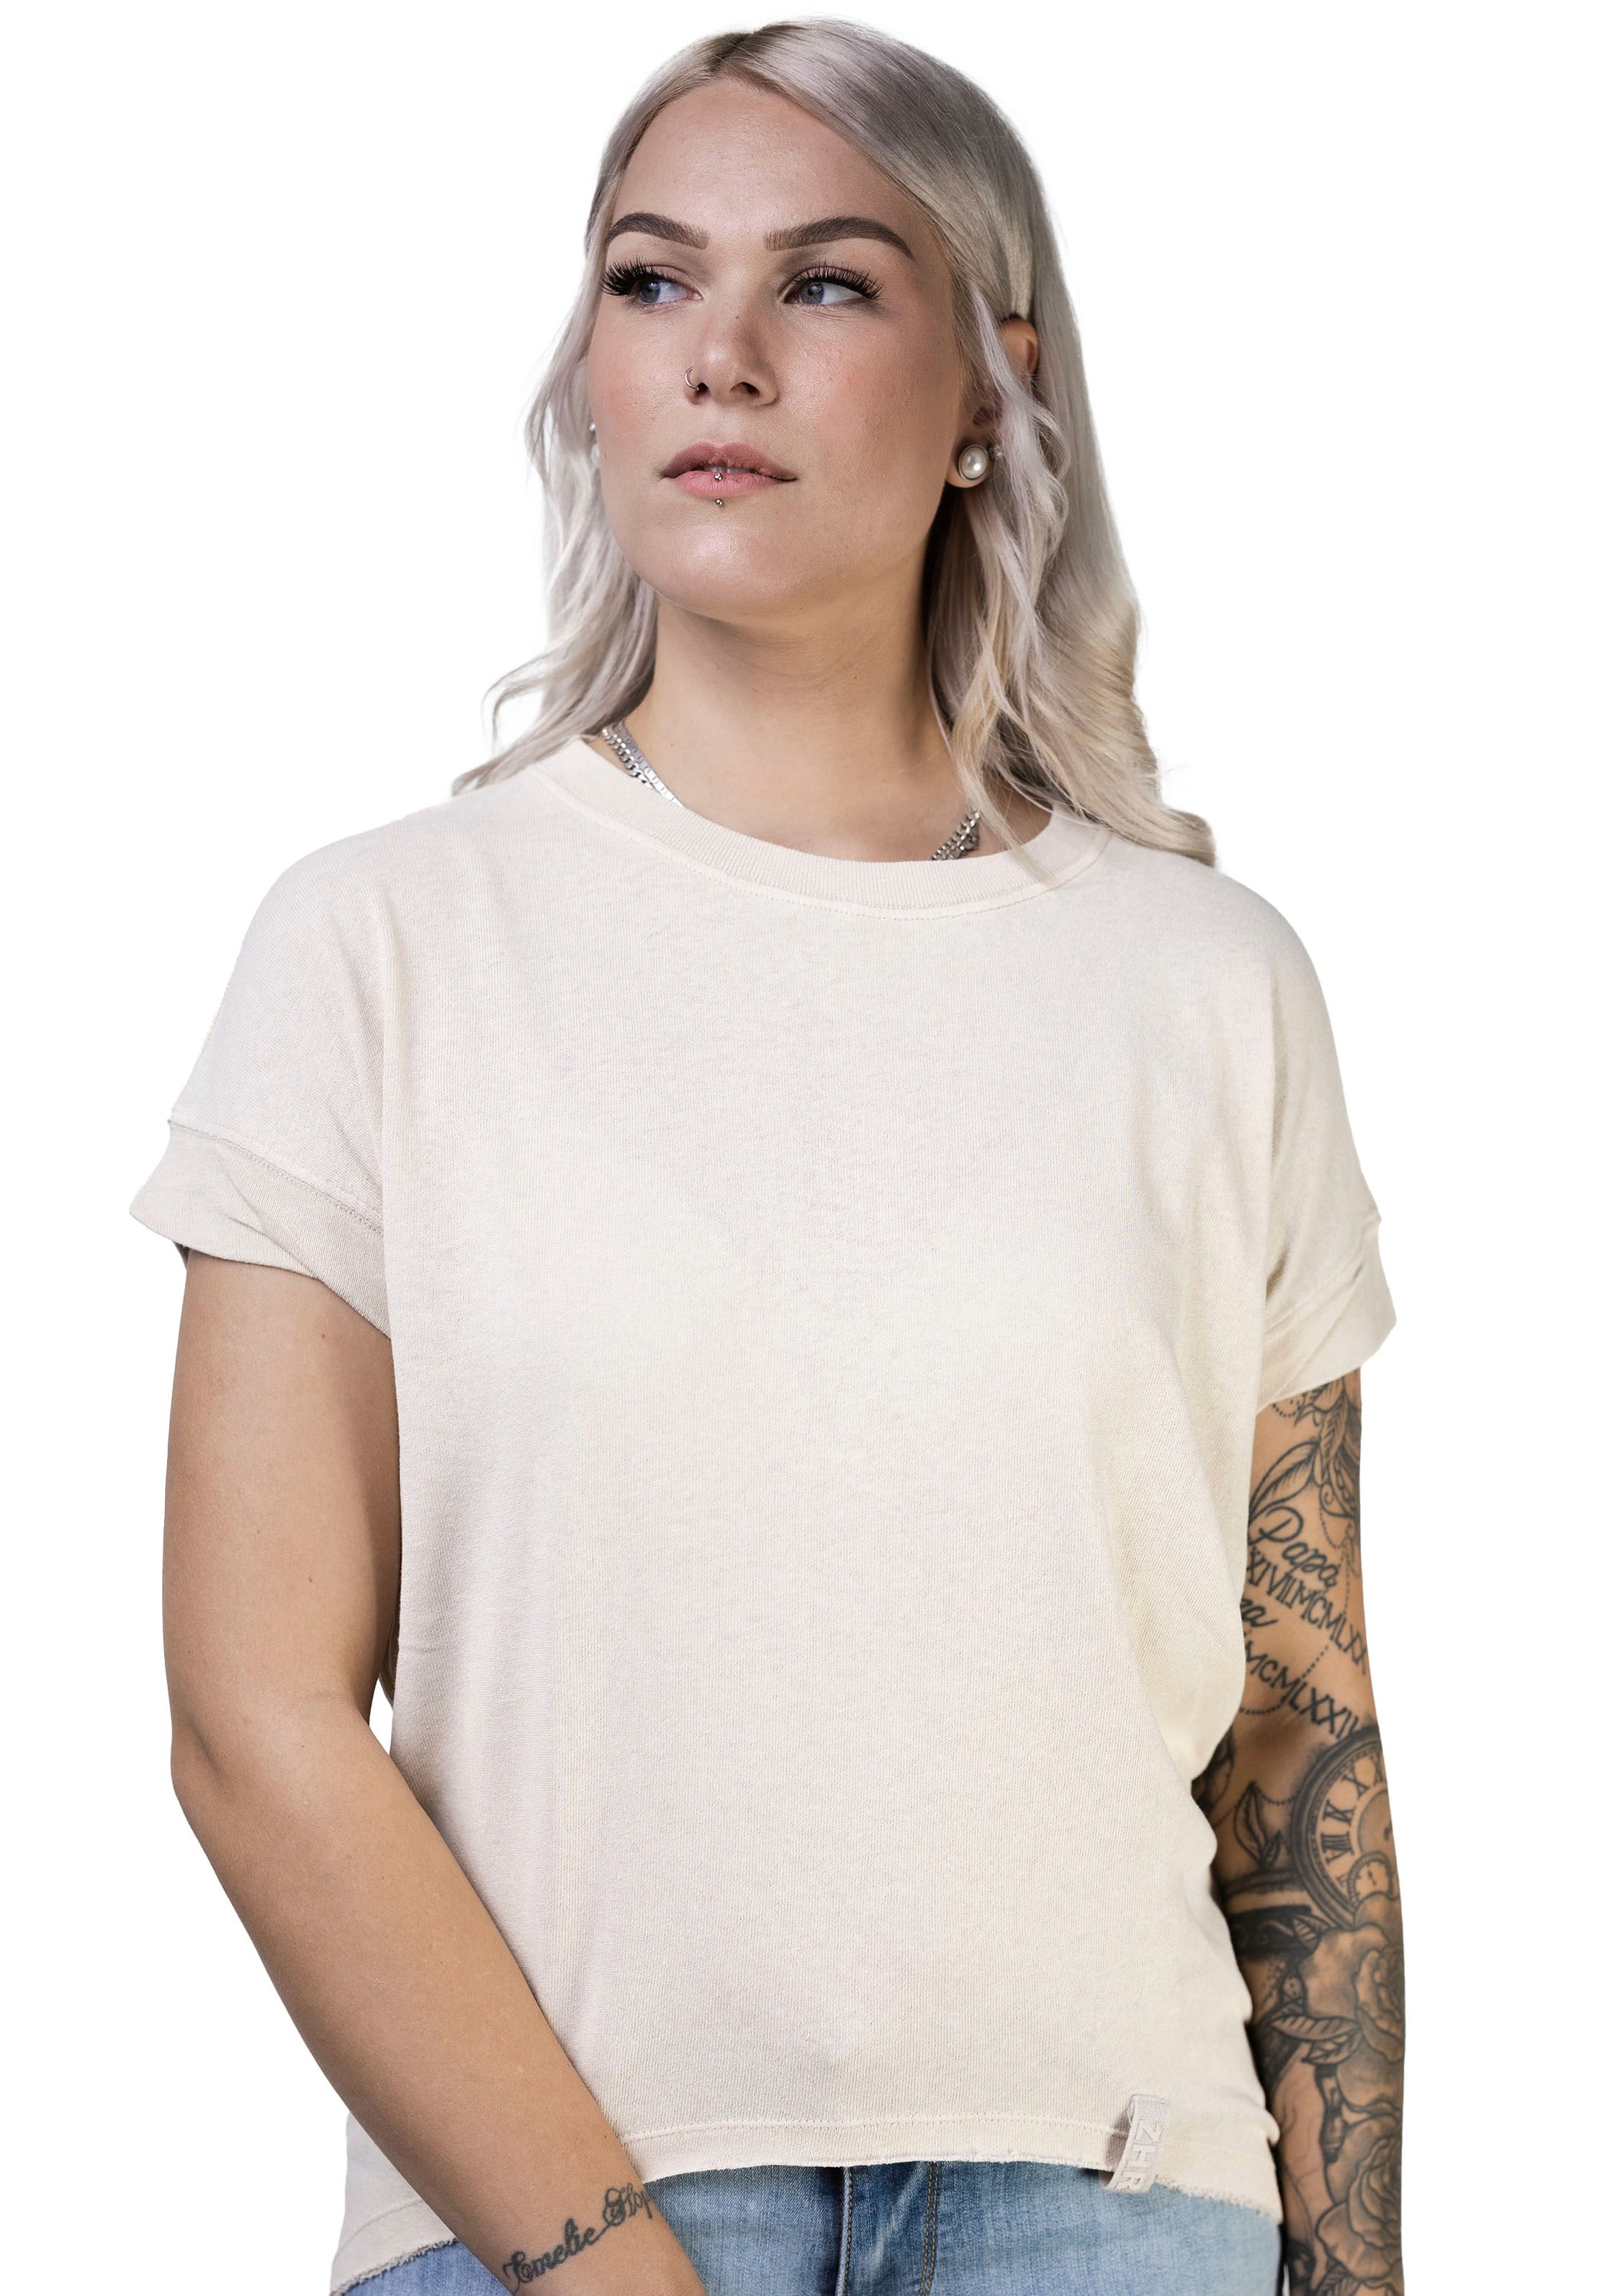 Zhrill T-Shirt online kaufen bei OTTO